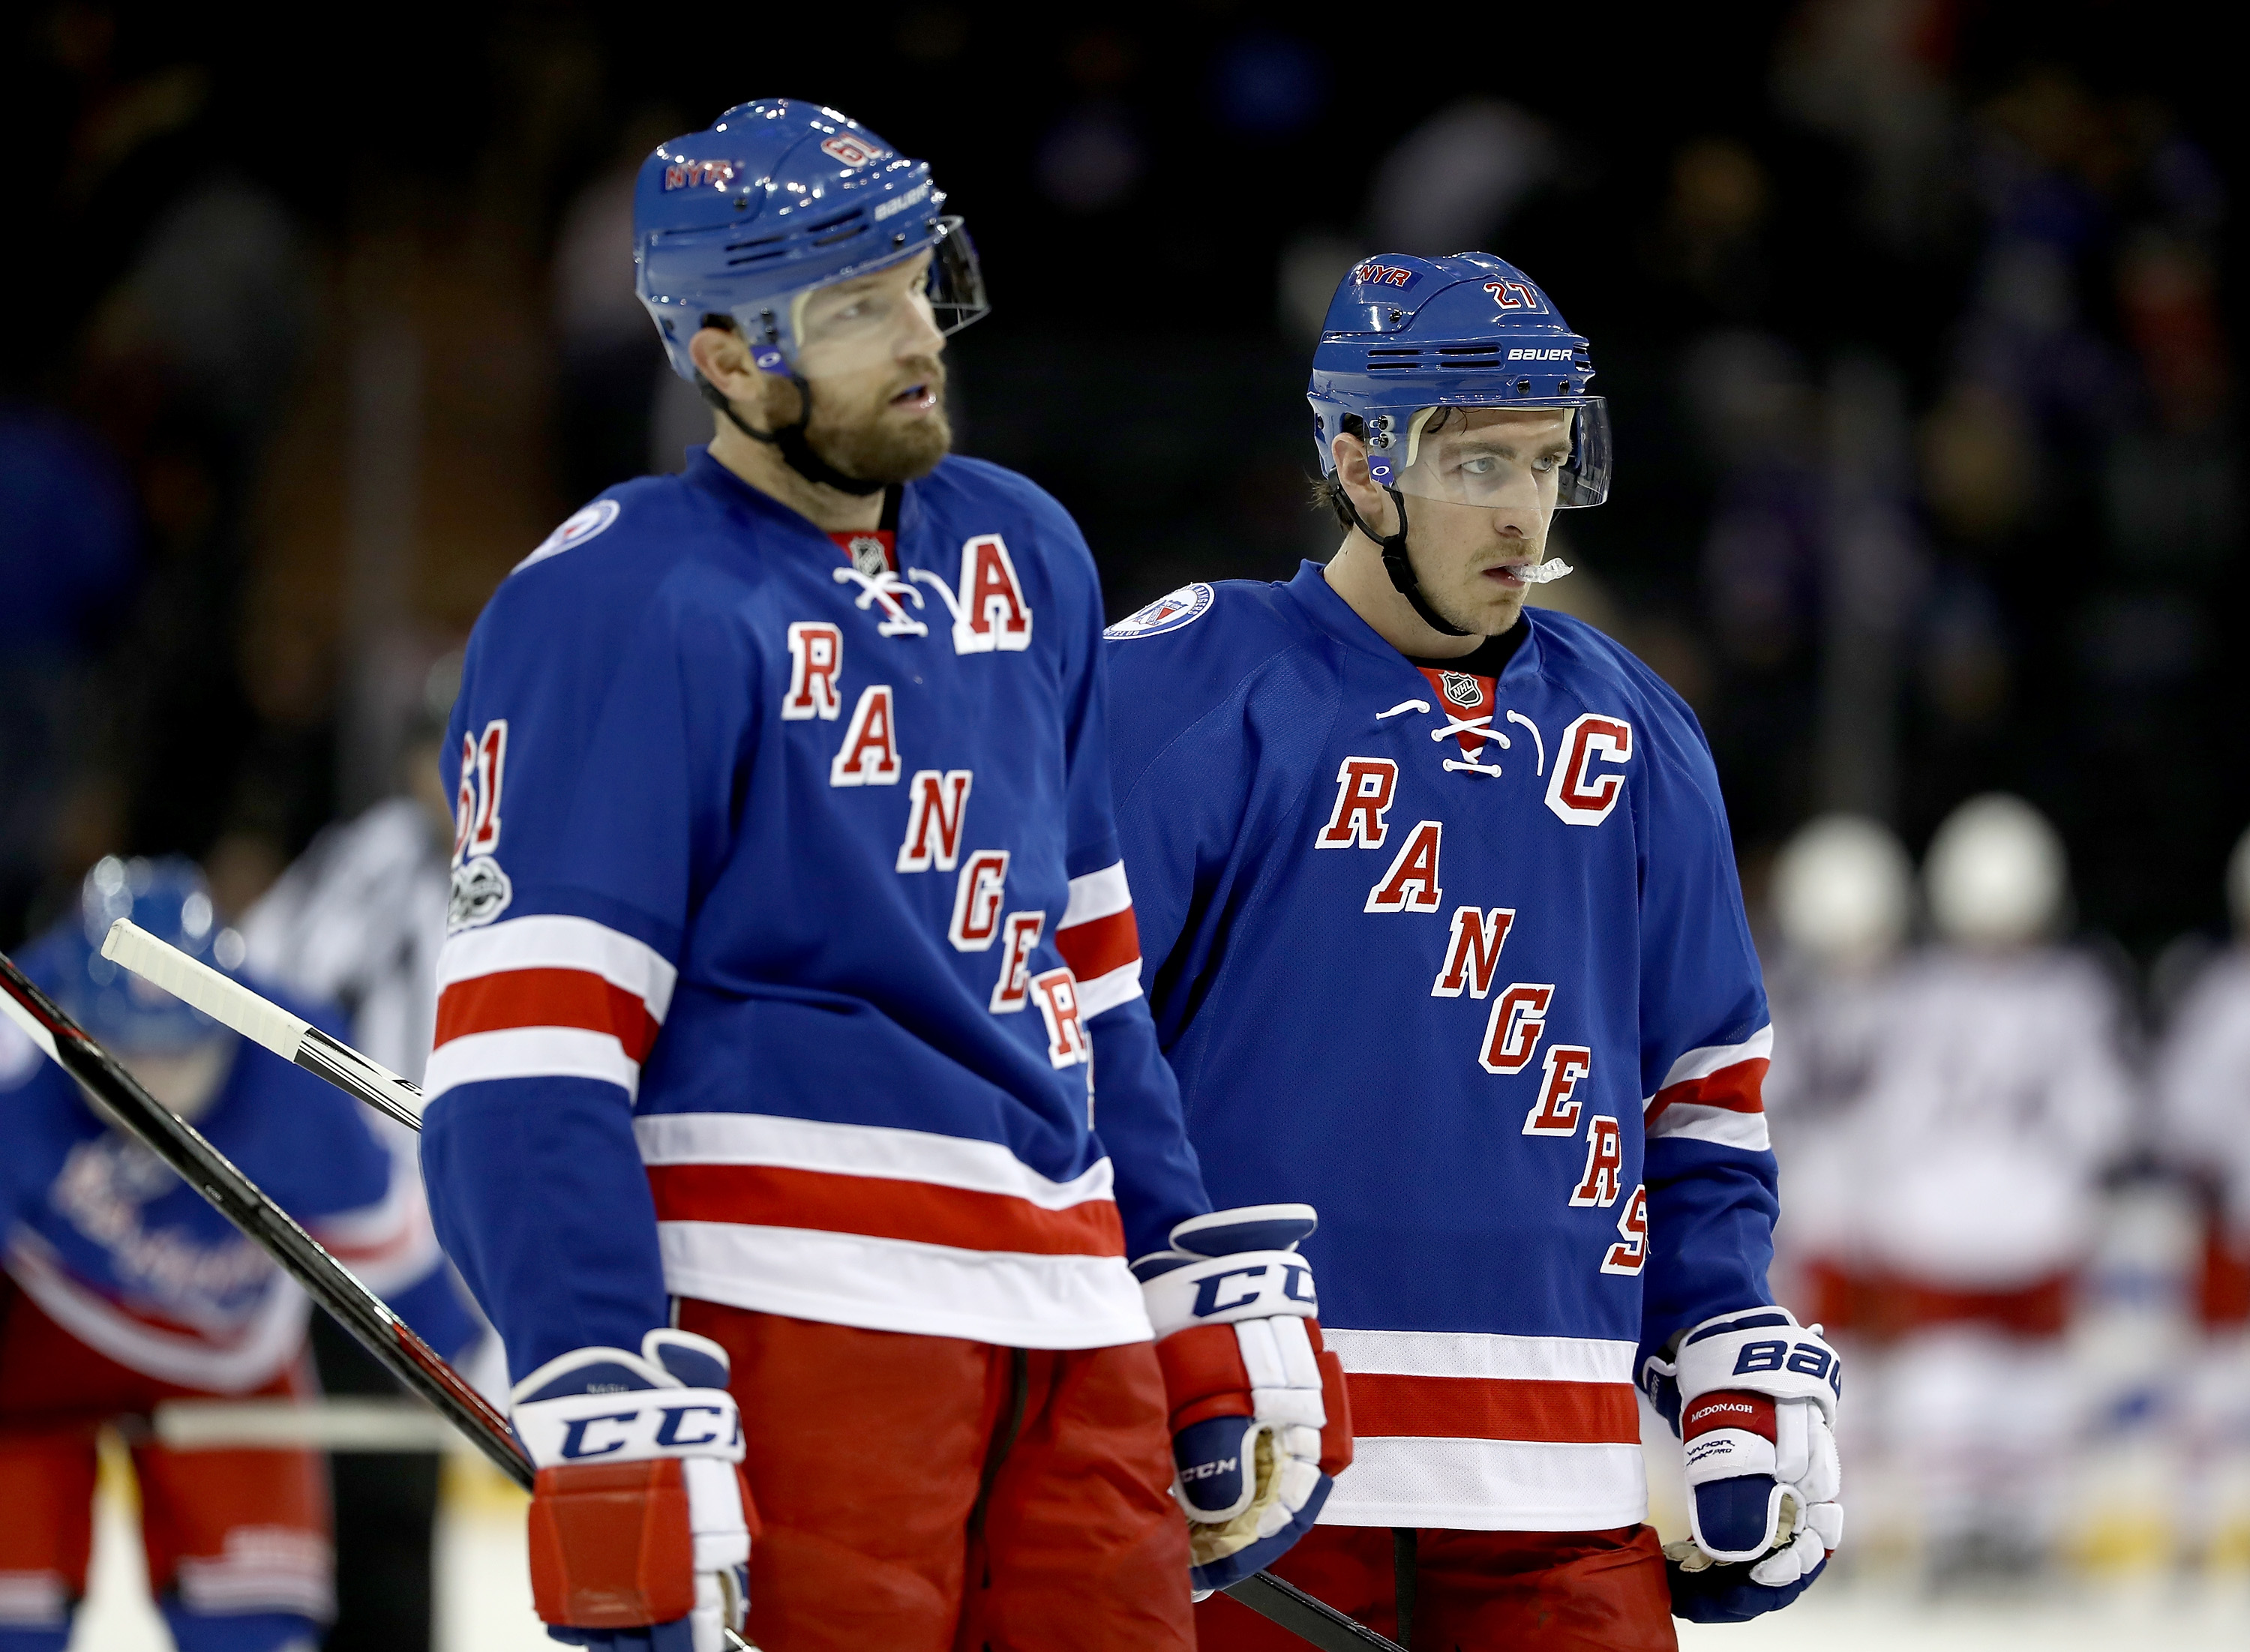 Rangers' Rick Nash not feeling heat of NY spotlight